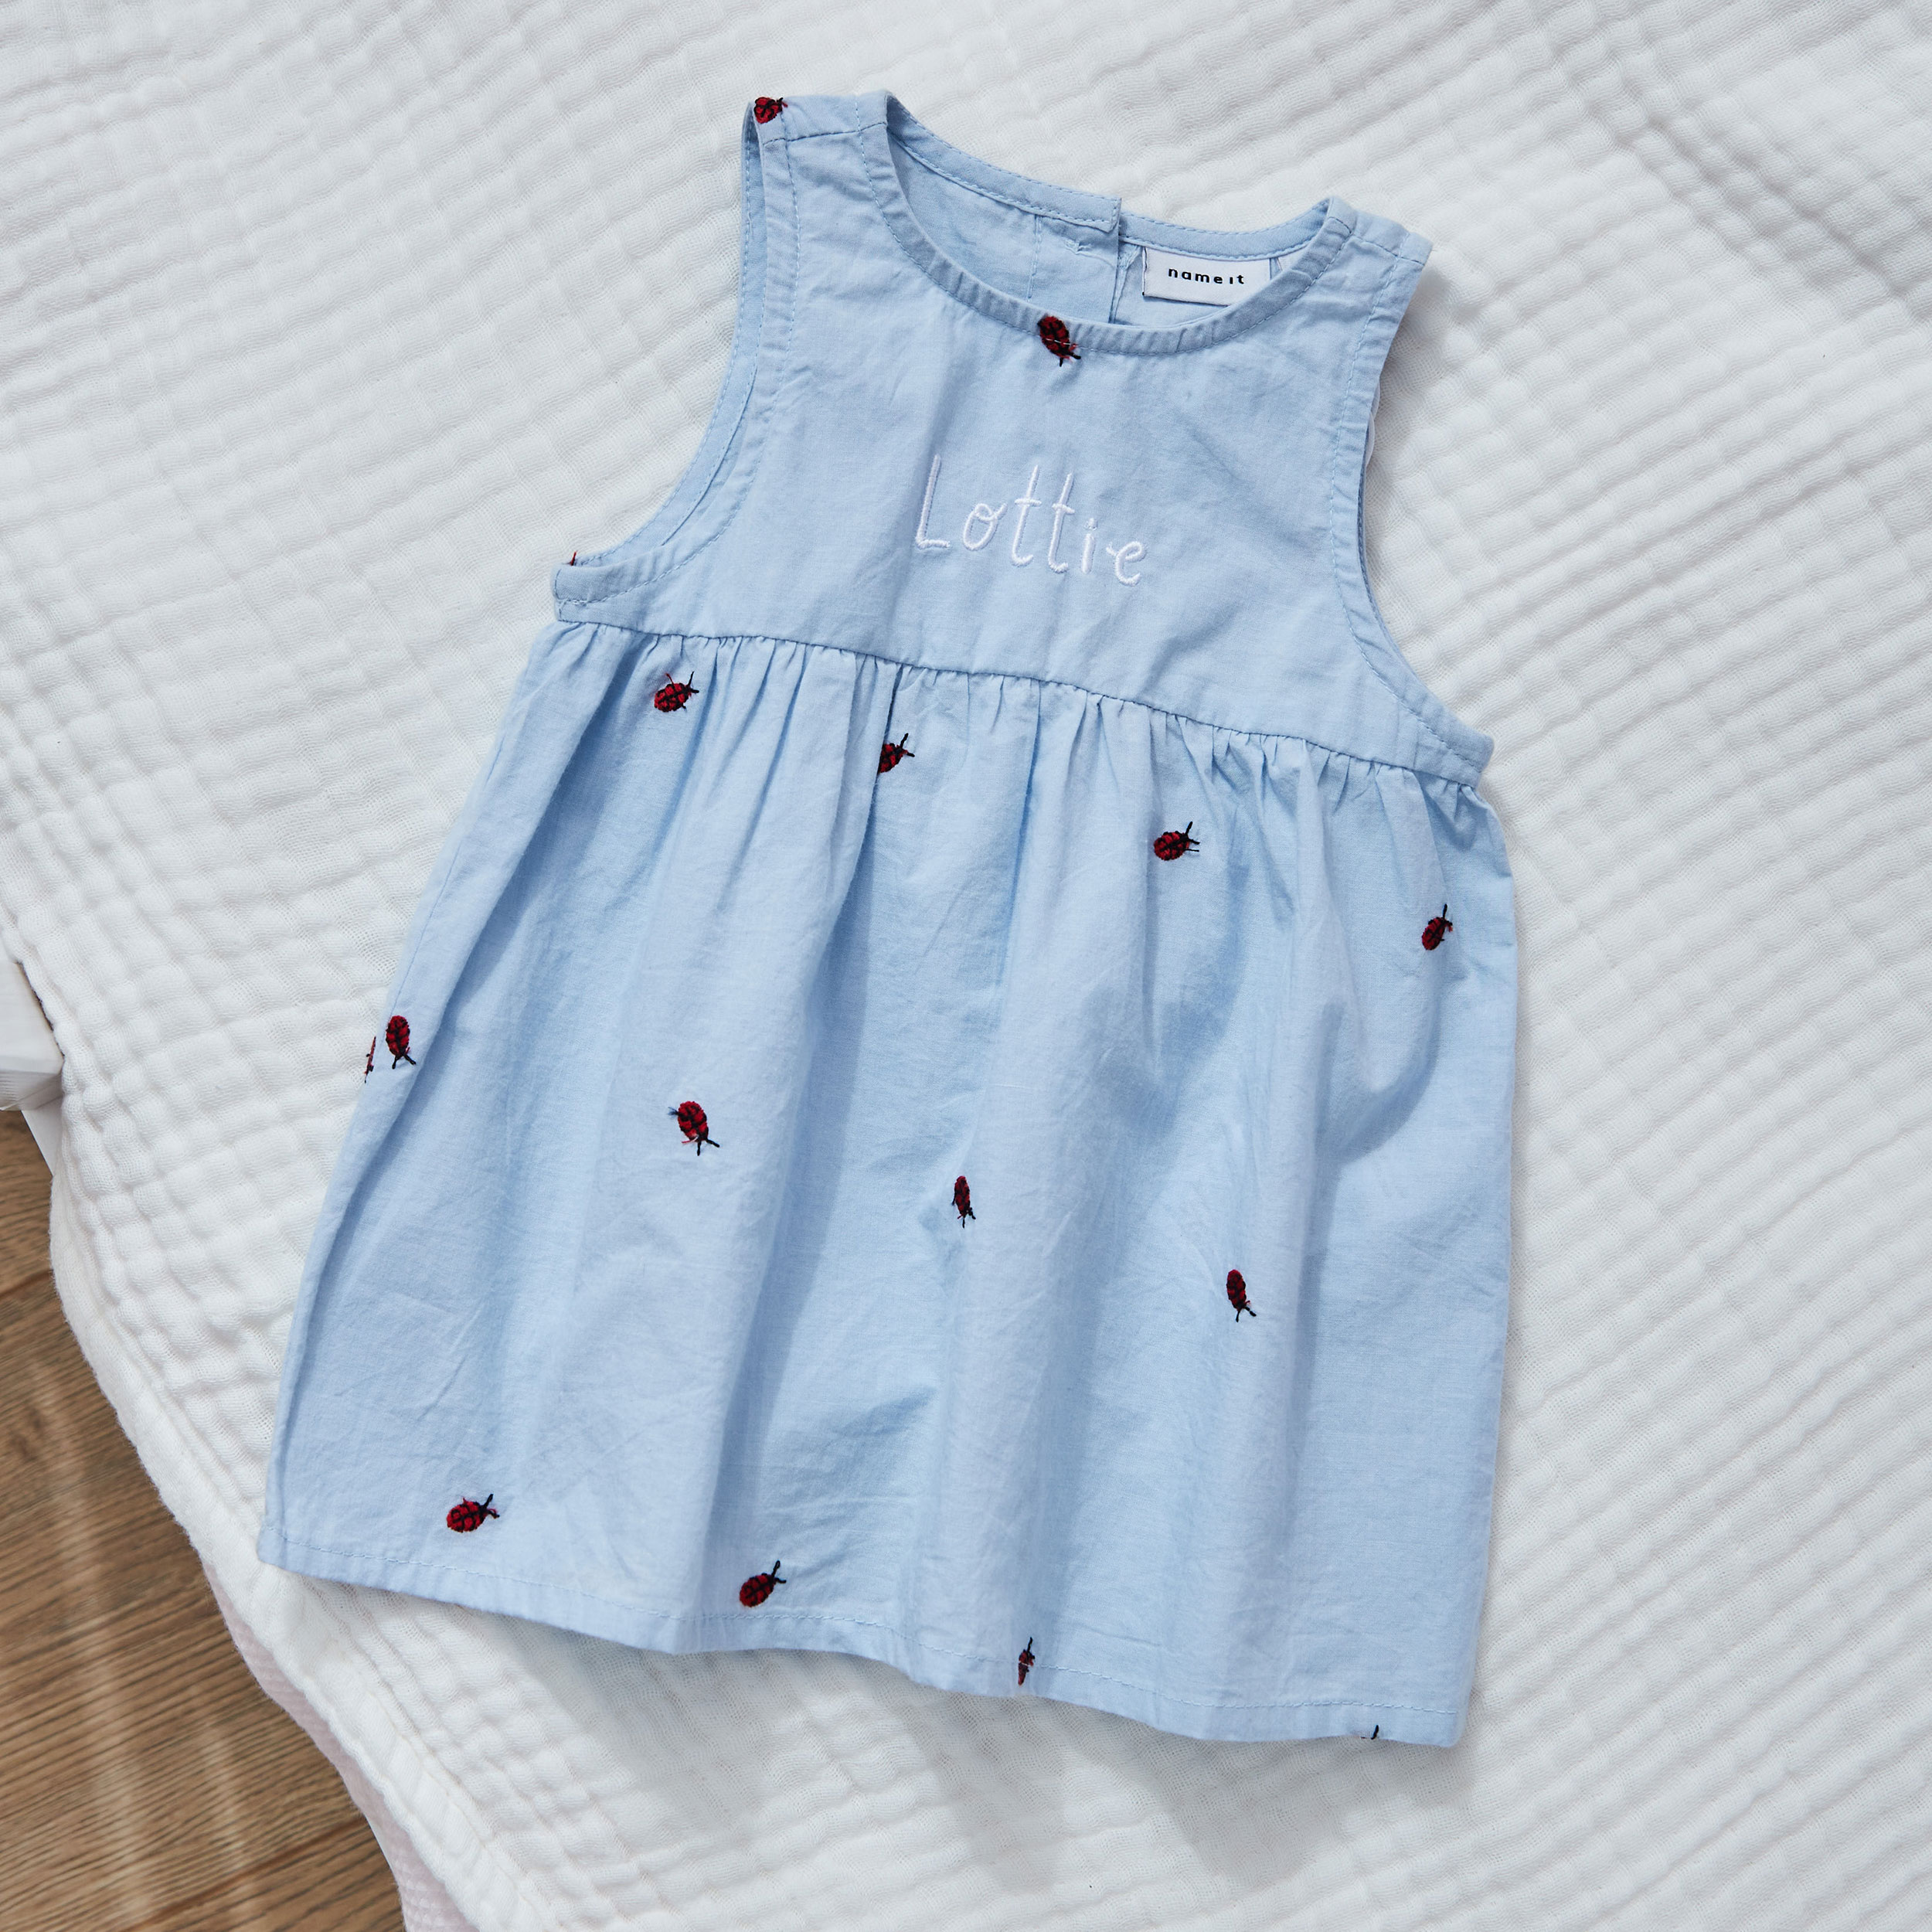 Personalised Blue Ladybug Dress